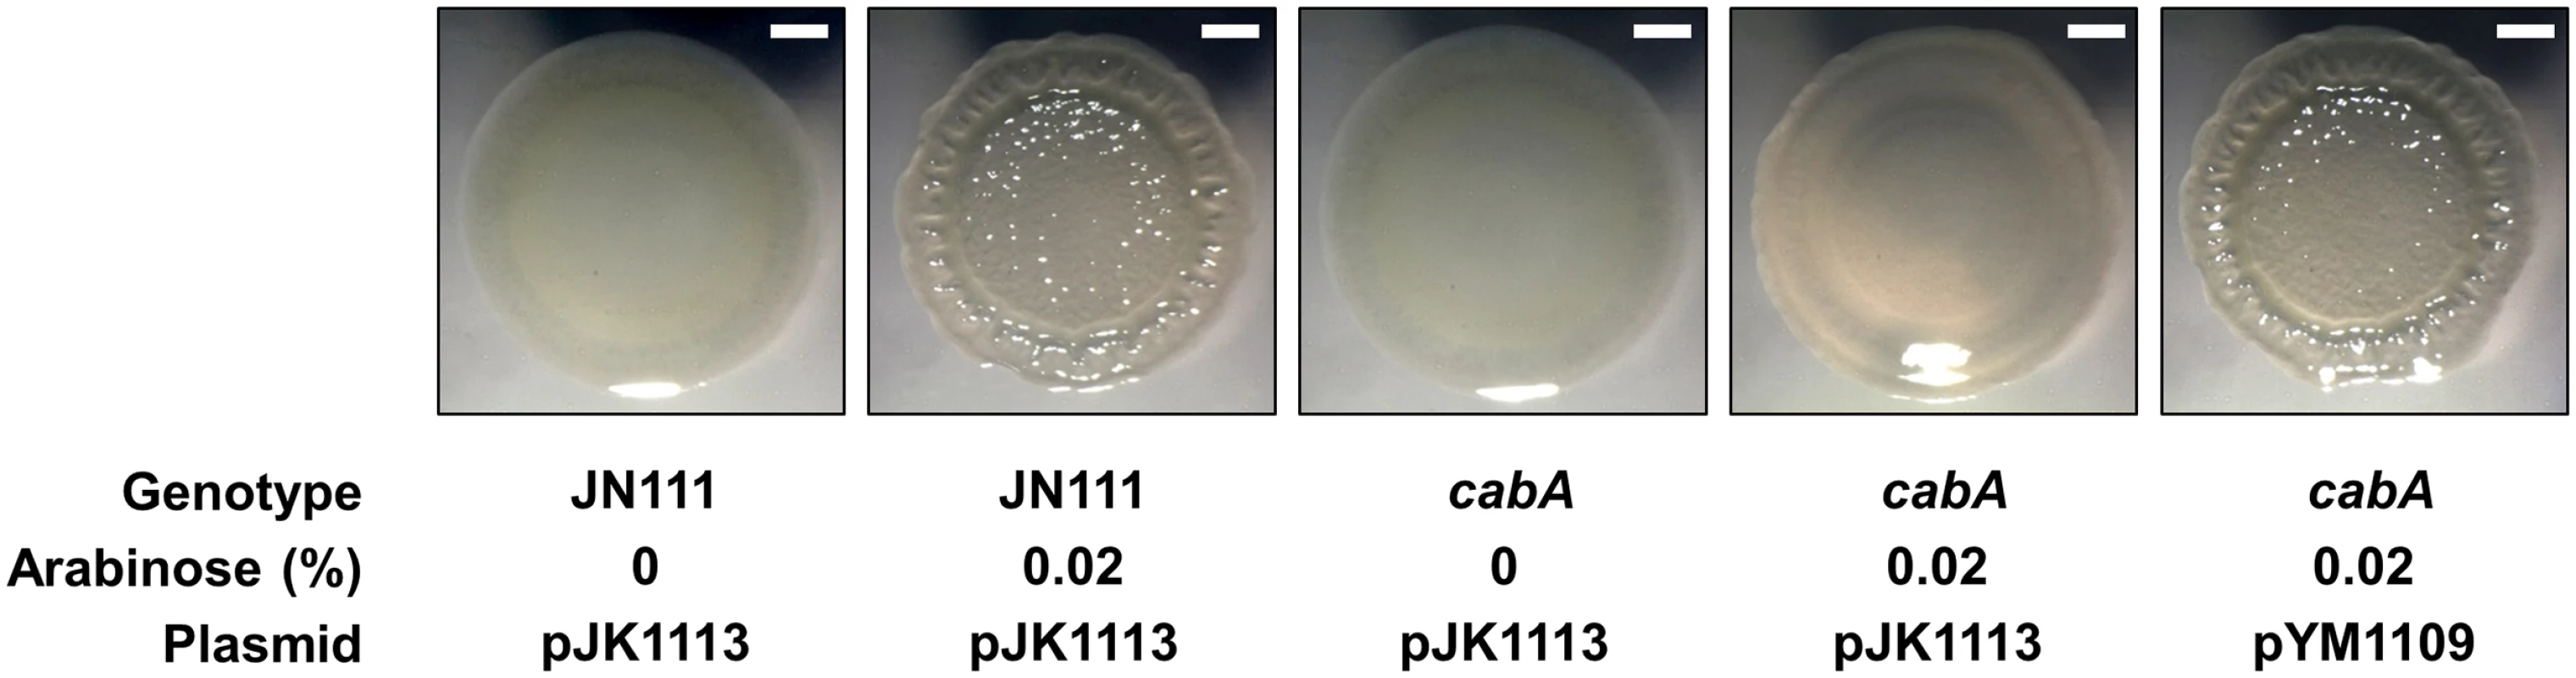 Effects of the <i>cabA</i> mutation on colony morphology.